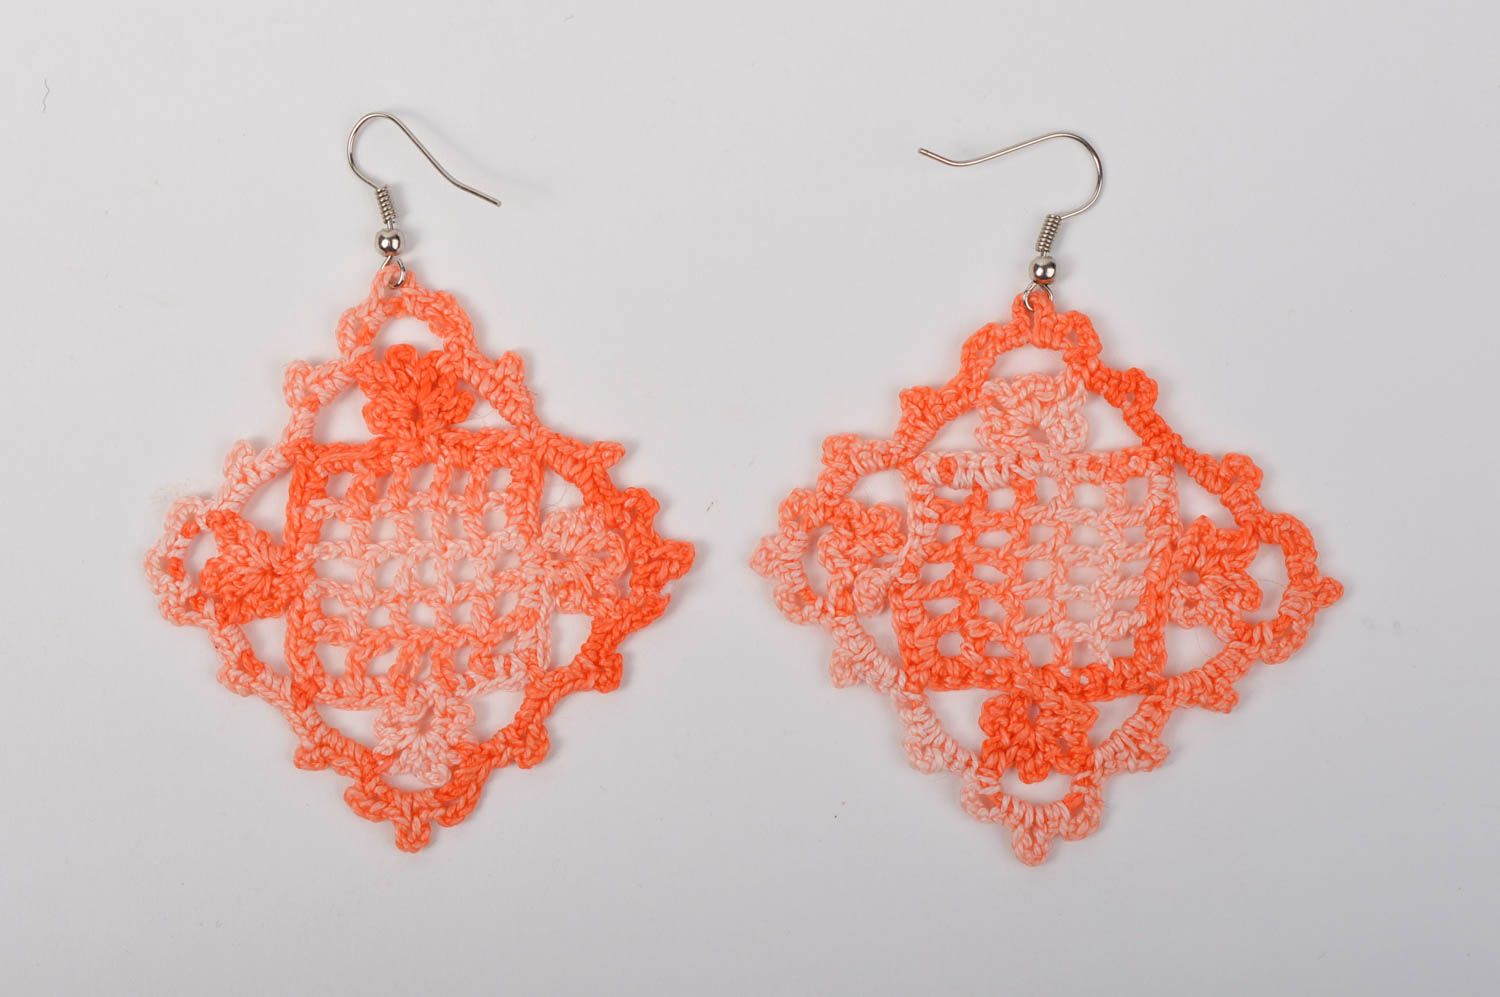 Handmade jewelry unusual earrings large earrings crocheted earrings gift ideas photo 3